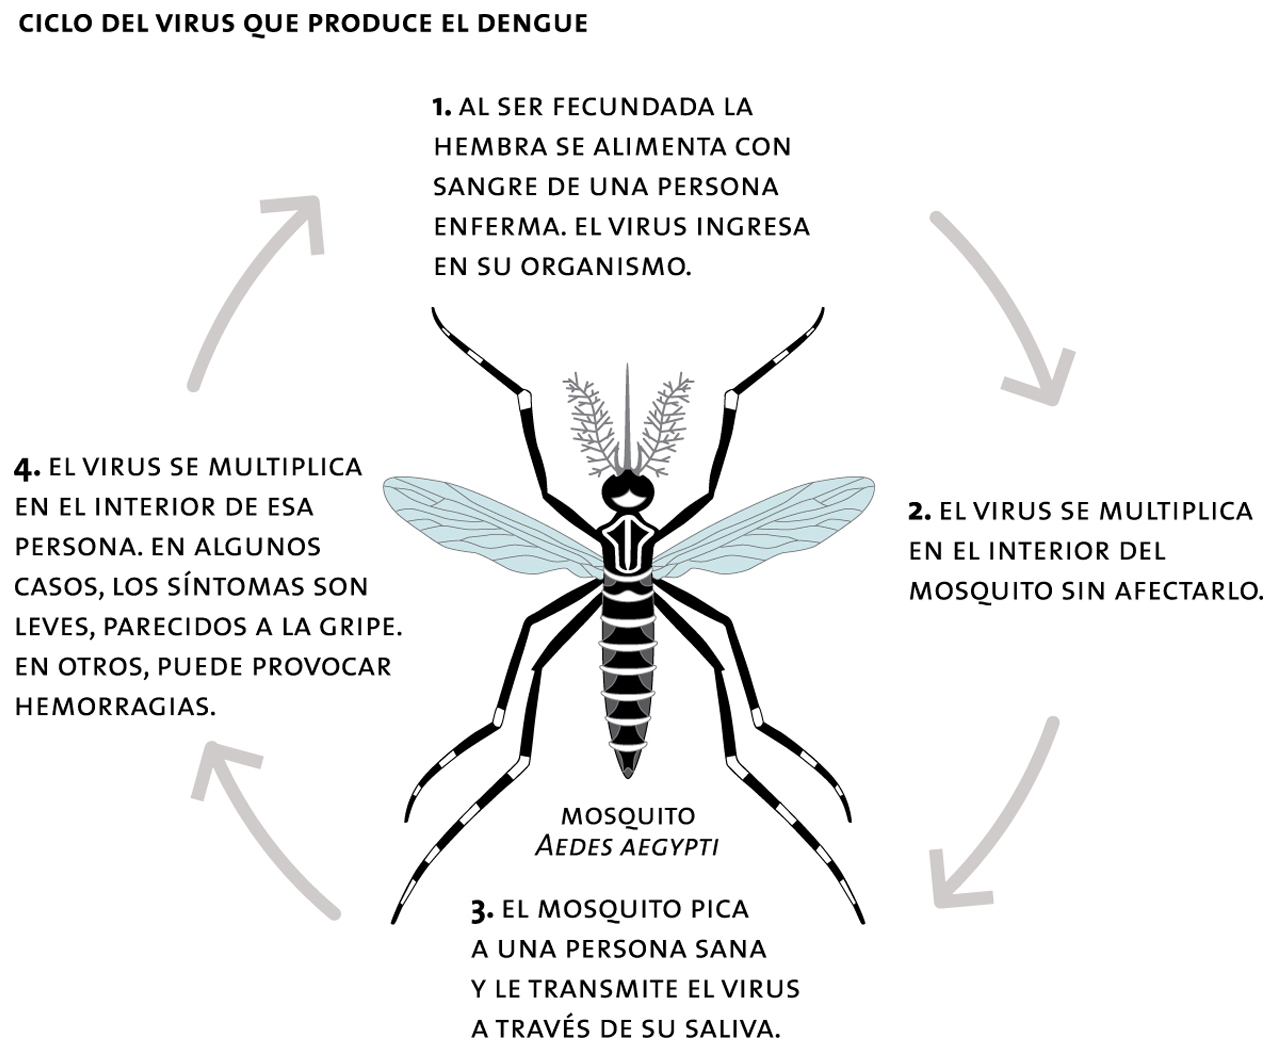 Ciclo del virus que produce el dengue